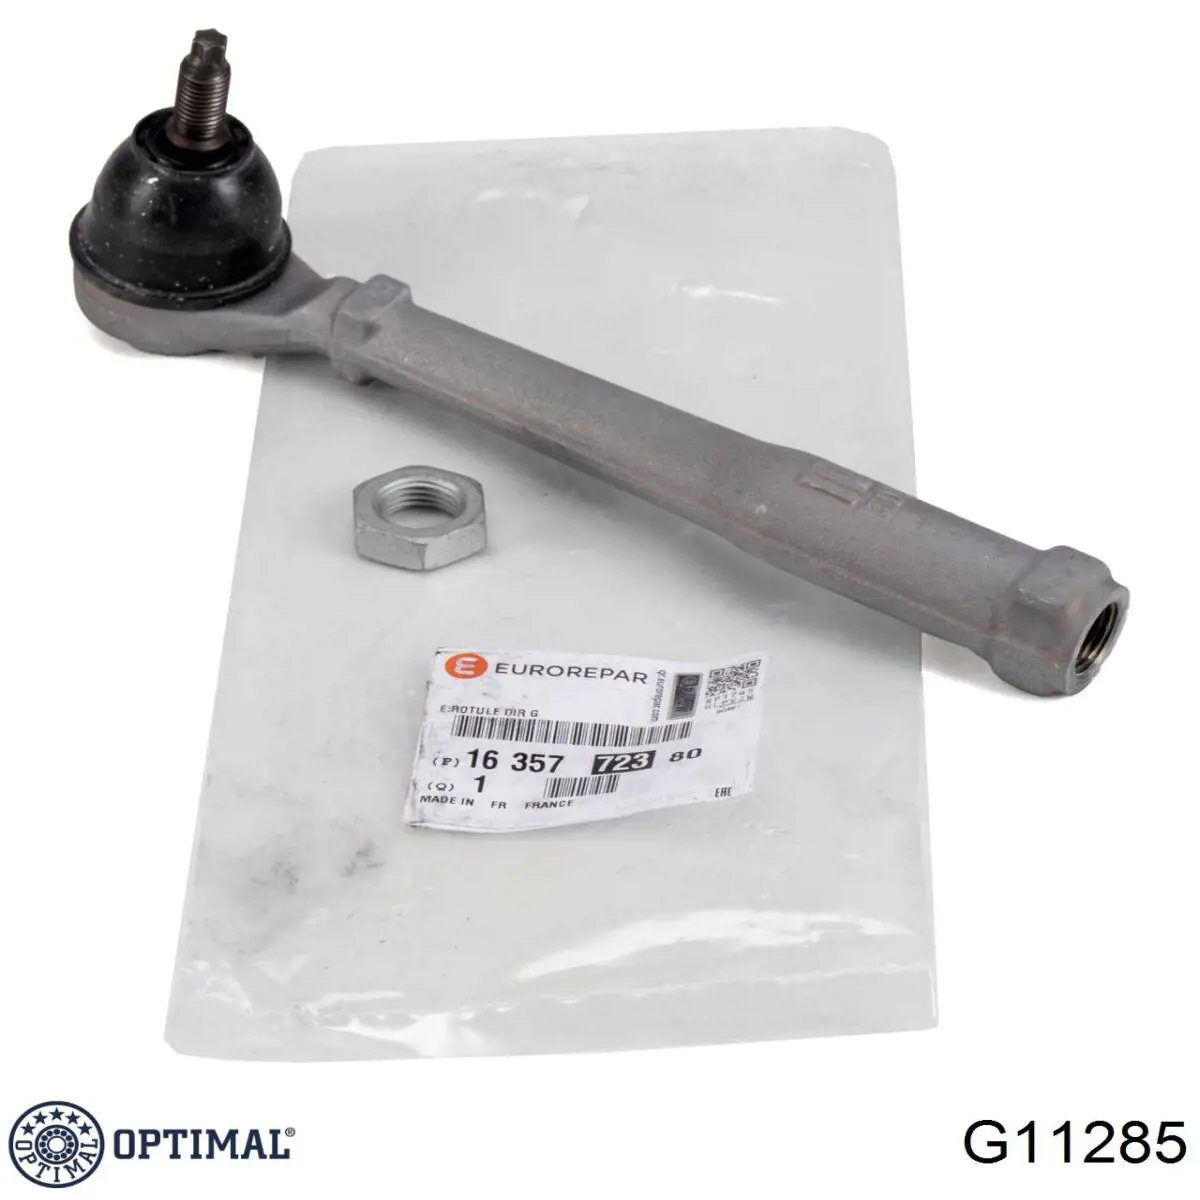 G11285 Optimal rótula barra de acoplamiento exterior